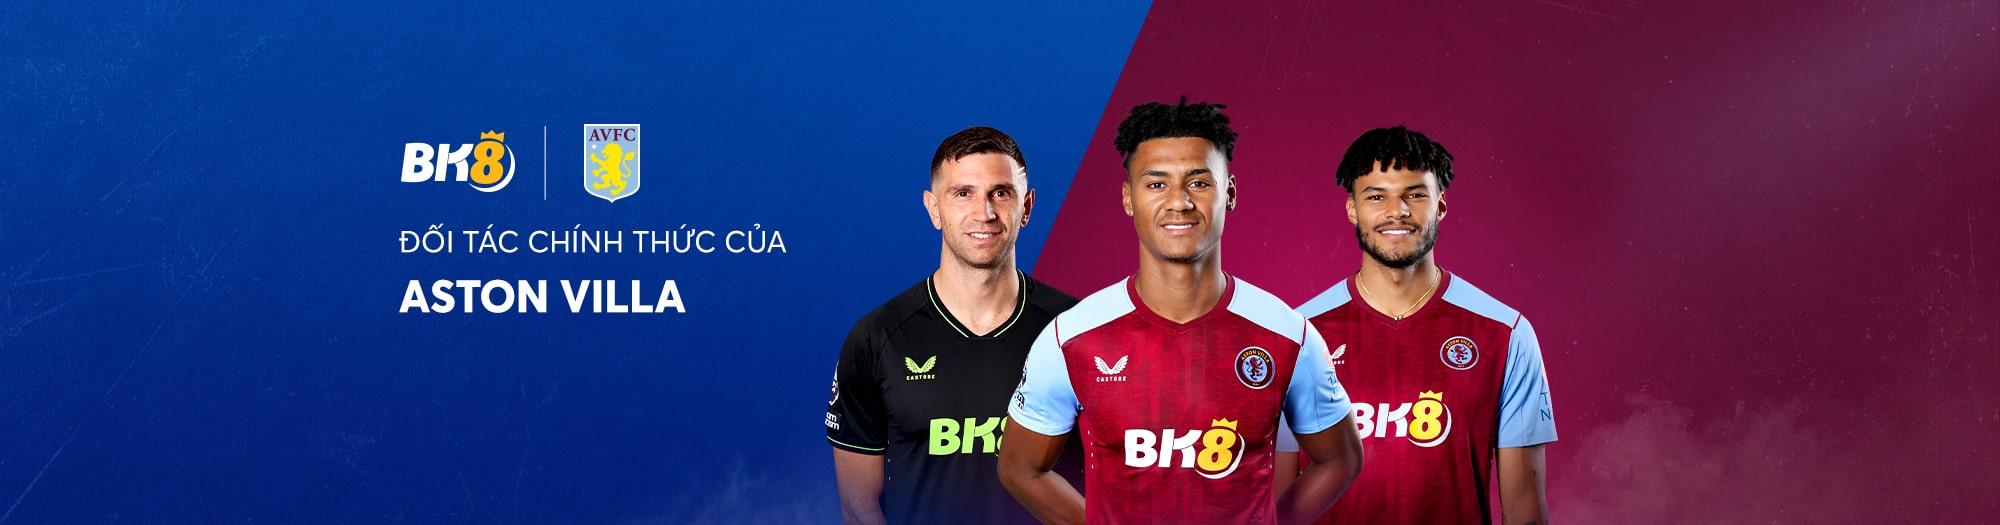 Aston Villa tái ký hợp với nhà cái BK8